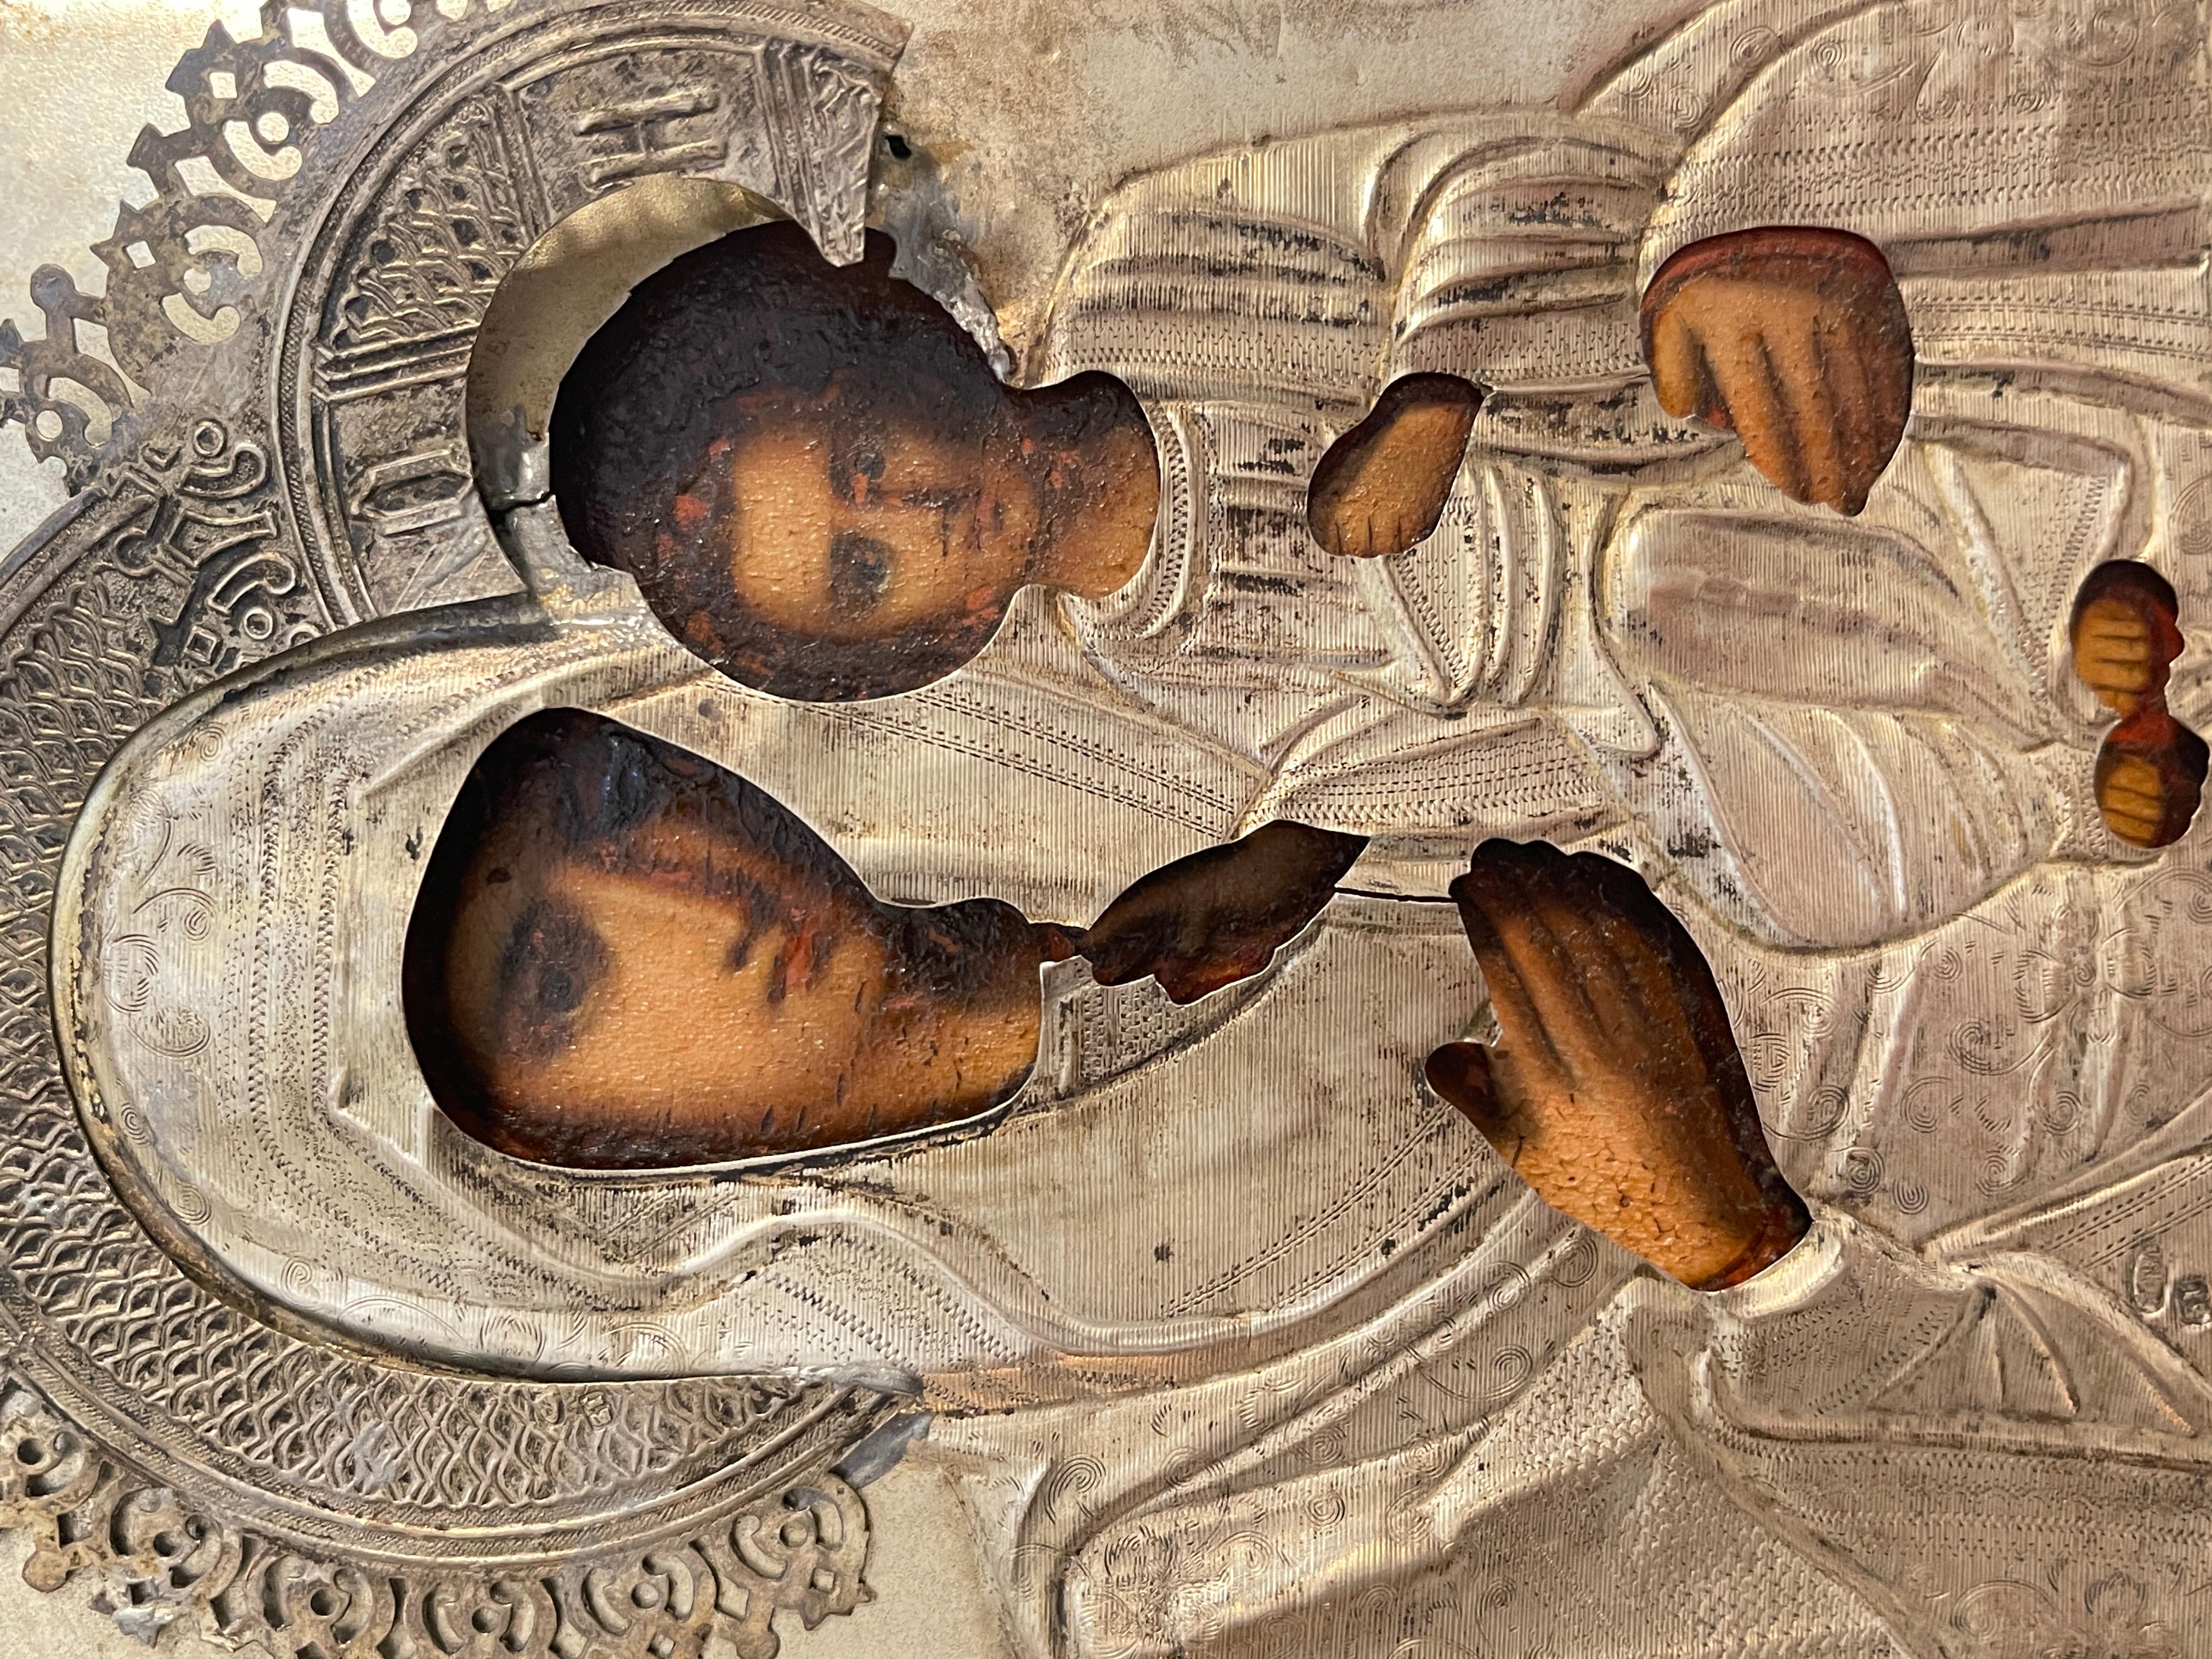 Icone ancienne de belle facture, datant du XIXe siècle, russe. L'icône représente la Vierge au centre avec l'Enfant, recouvert de riza d'argent.
En bon état, comme le montrent les photos, quelques défauts et signes d'usure dus à l'âge.
Dimensions :